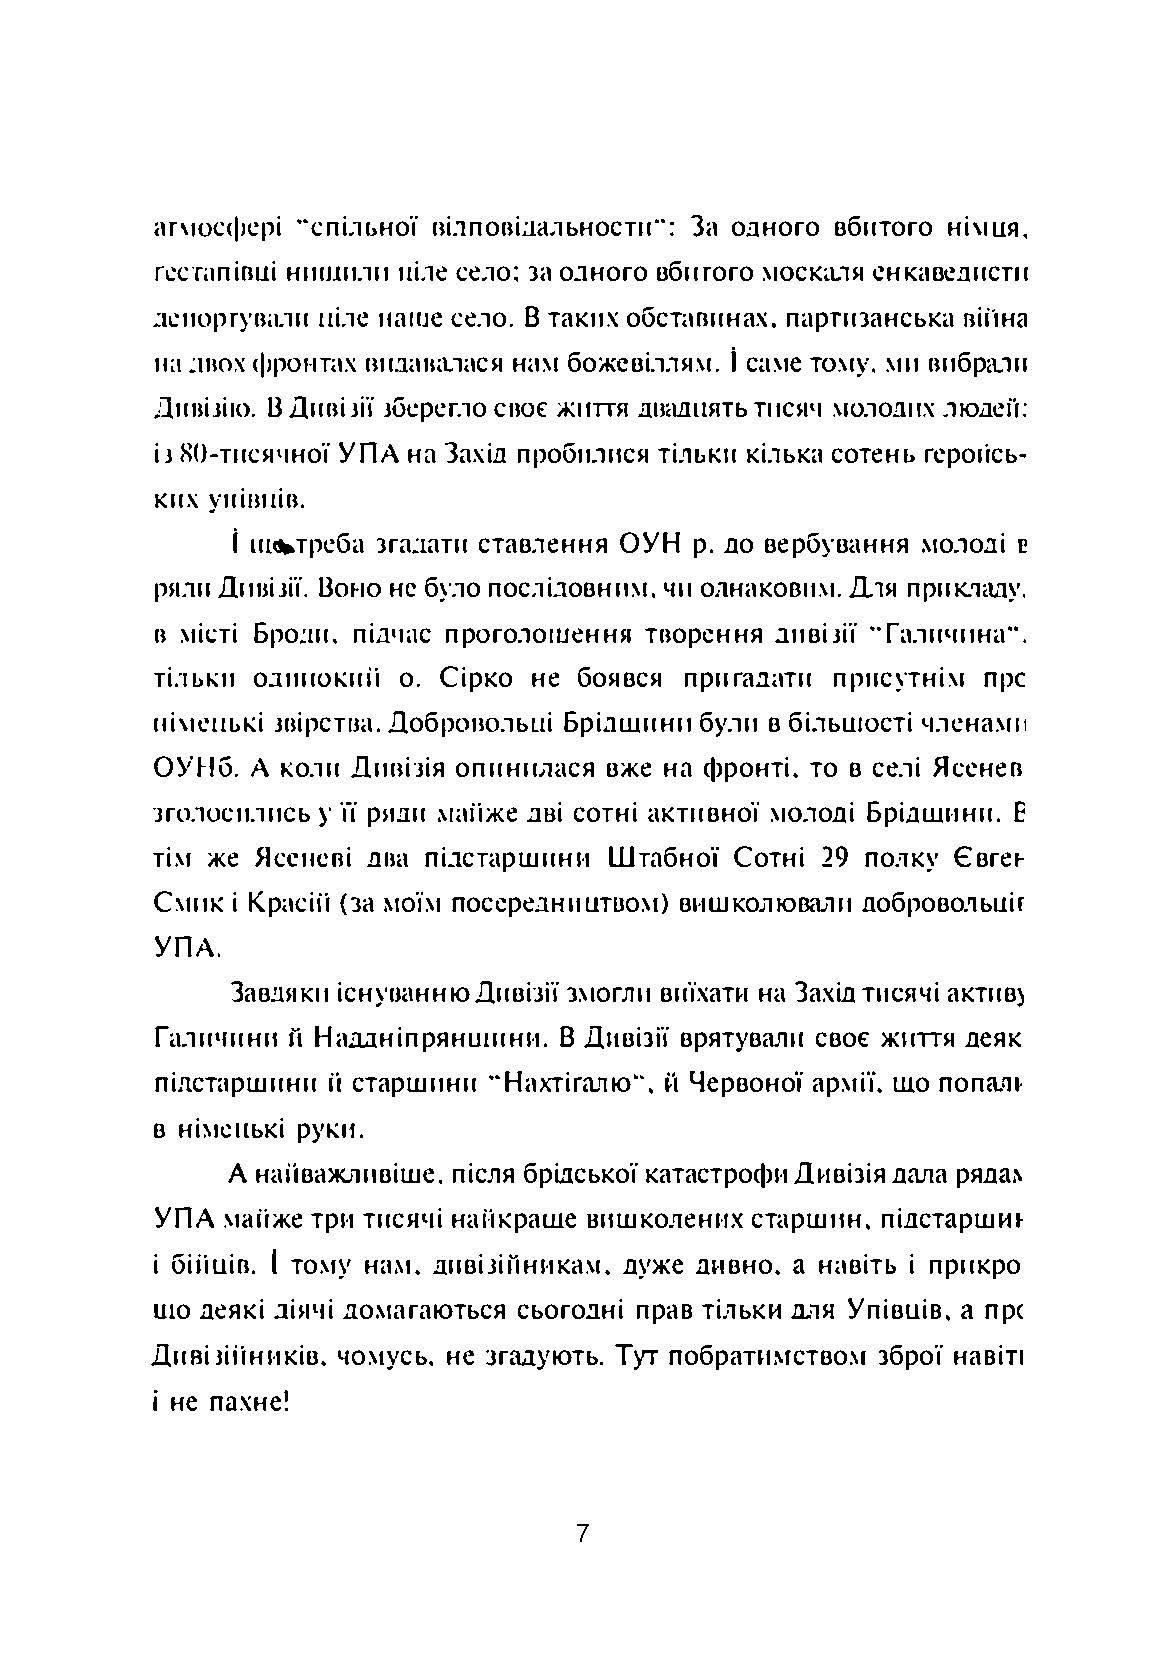 УПА й дивізія "Галичина": факти й фантазія. Автор — Василь Сірський. 